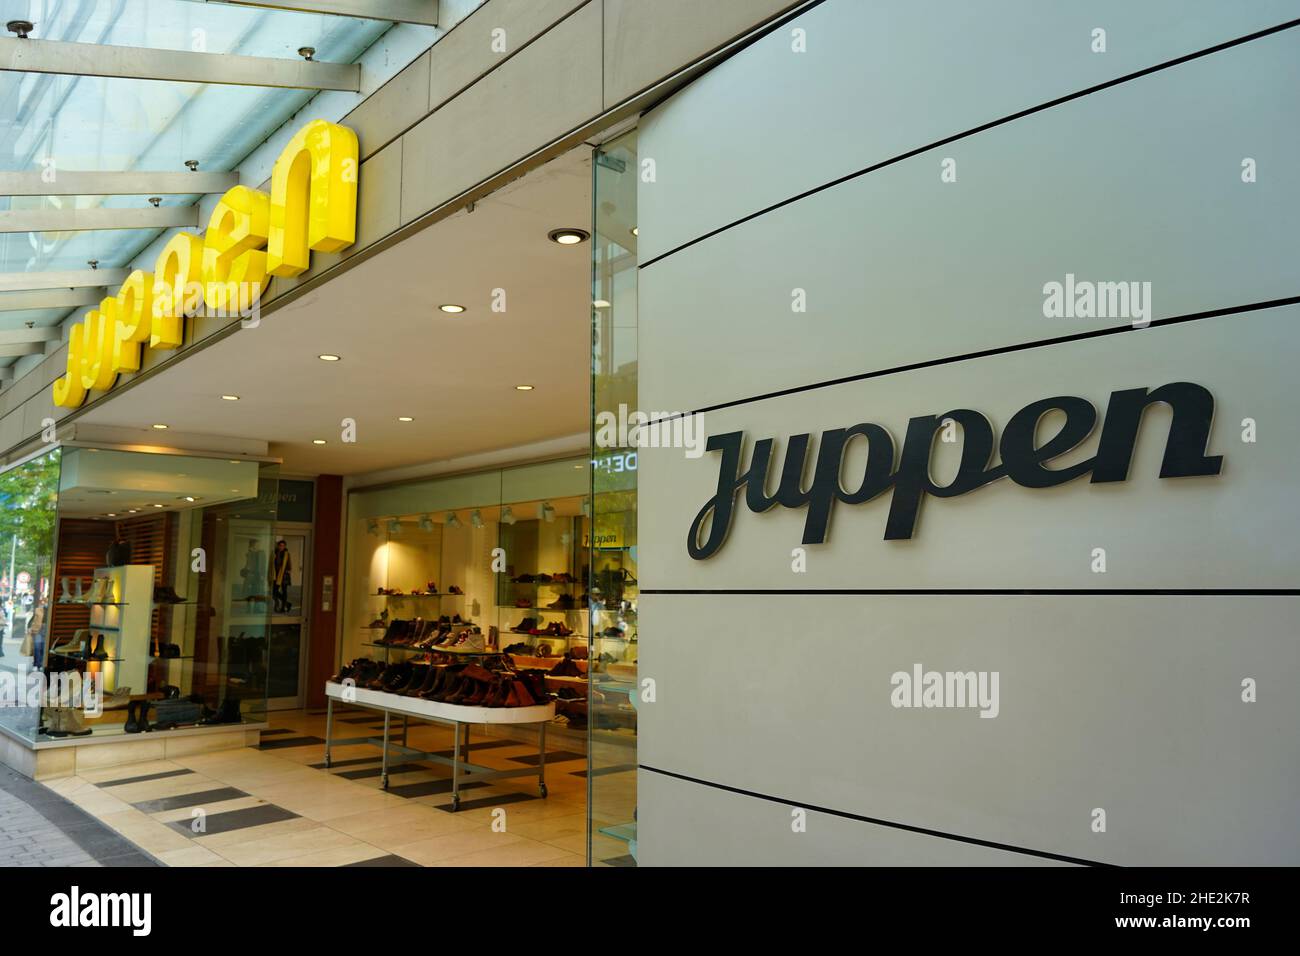 Le magasin de chaussures allemand Juppen, établi de longue date, se trouve dans la rue commerçante de Shadowstraße à Düsseldorf/Allemagne. Banque D'Images